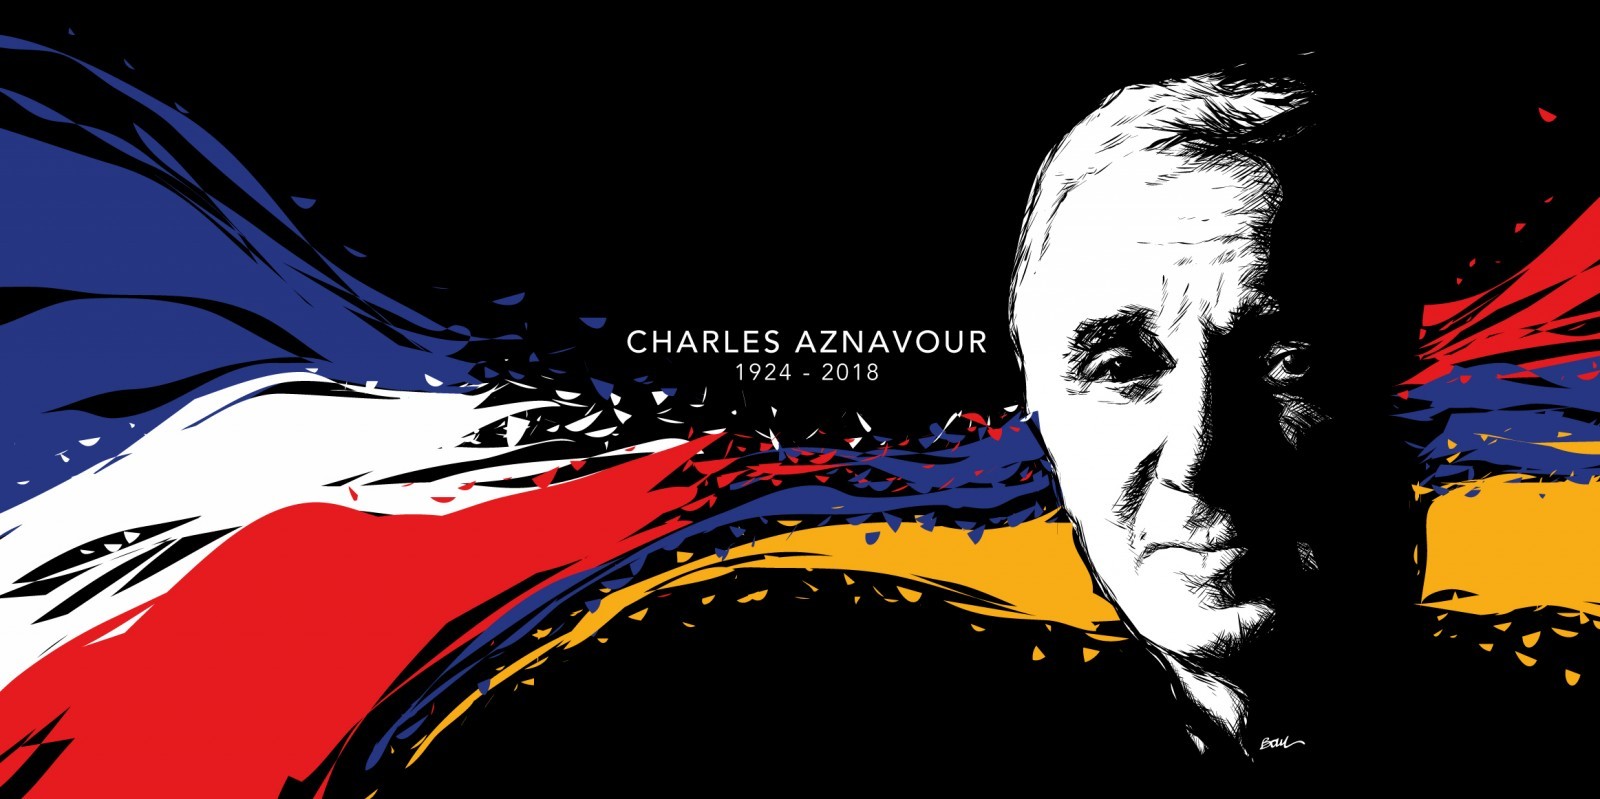 CHARLES AZNAVOUR 